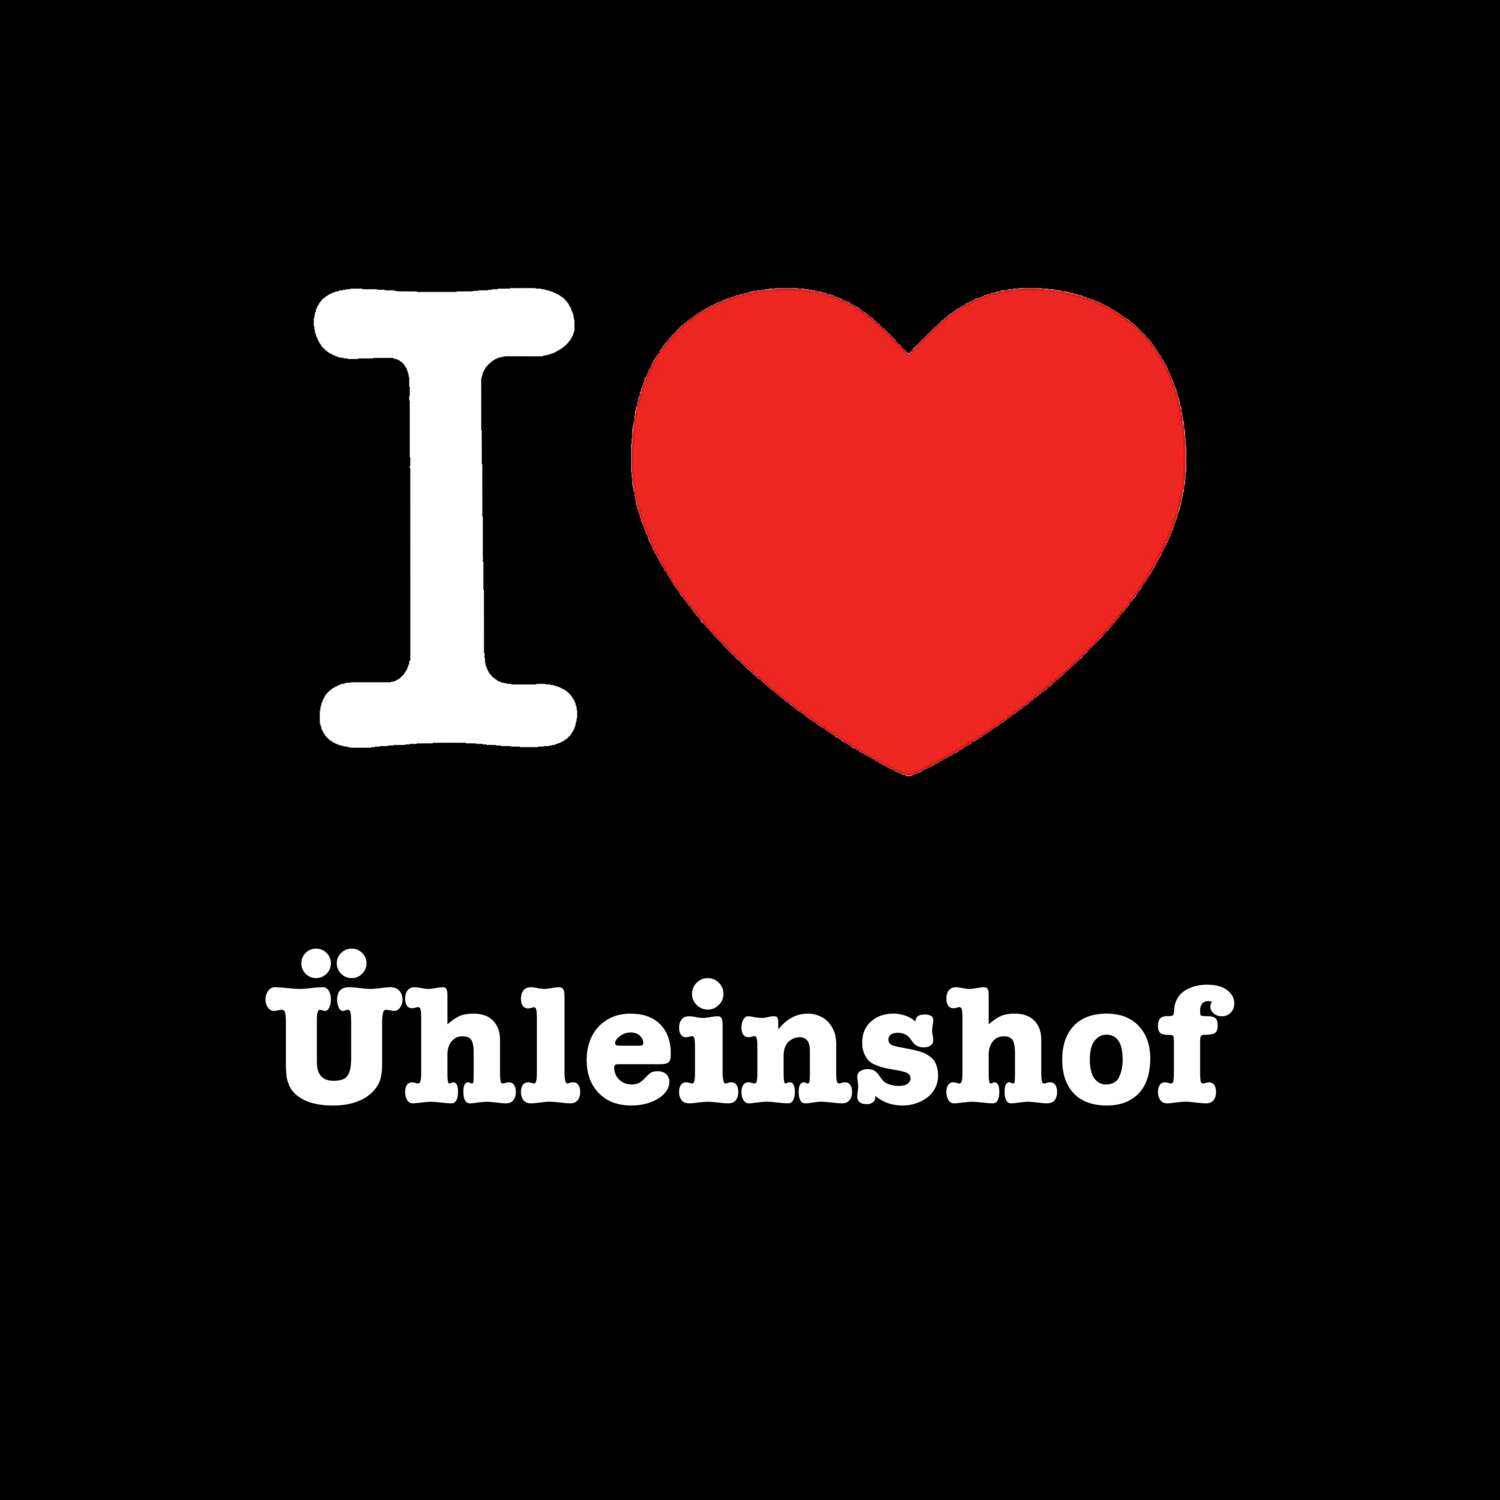 Ühleinshof T-Shirt »I love«